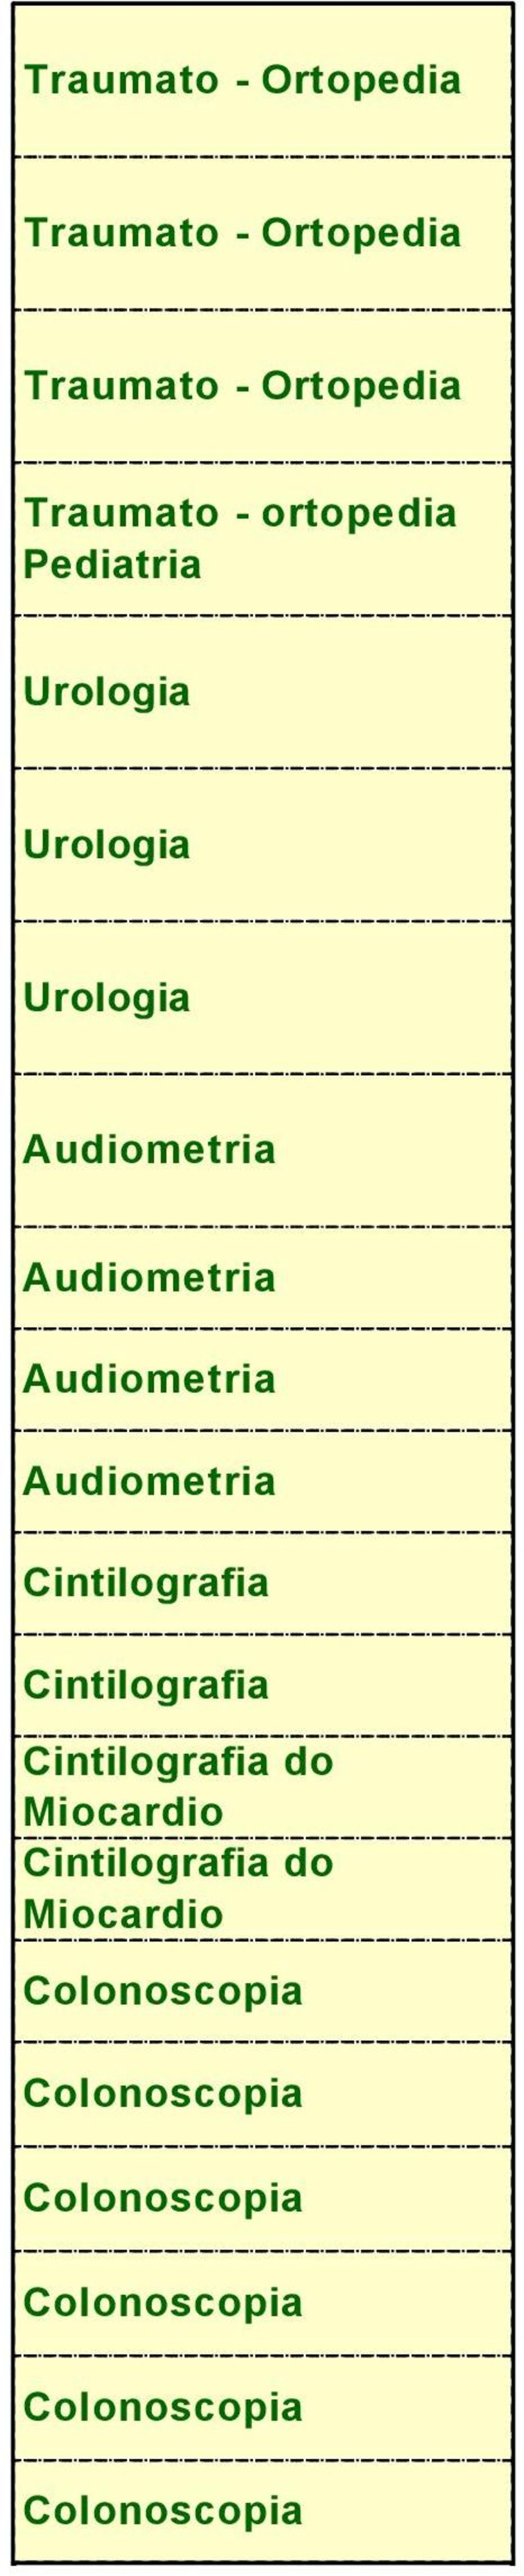 Audiometria Audiometria Cintilografia Cintilografia Cintilografia do Miocardio